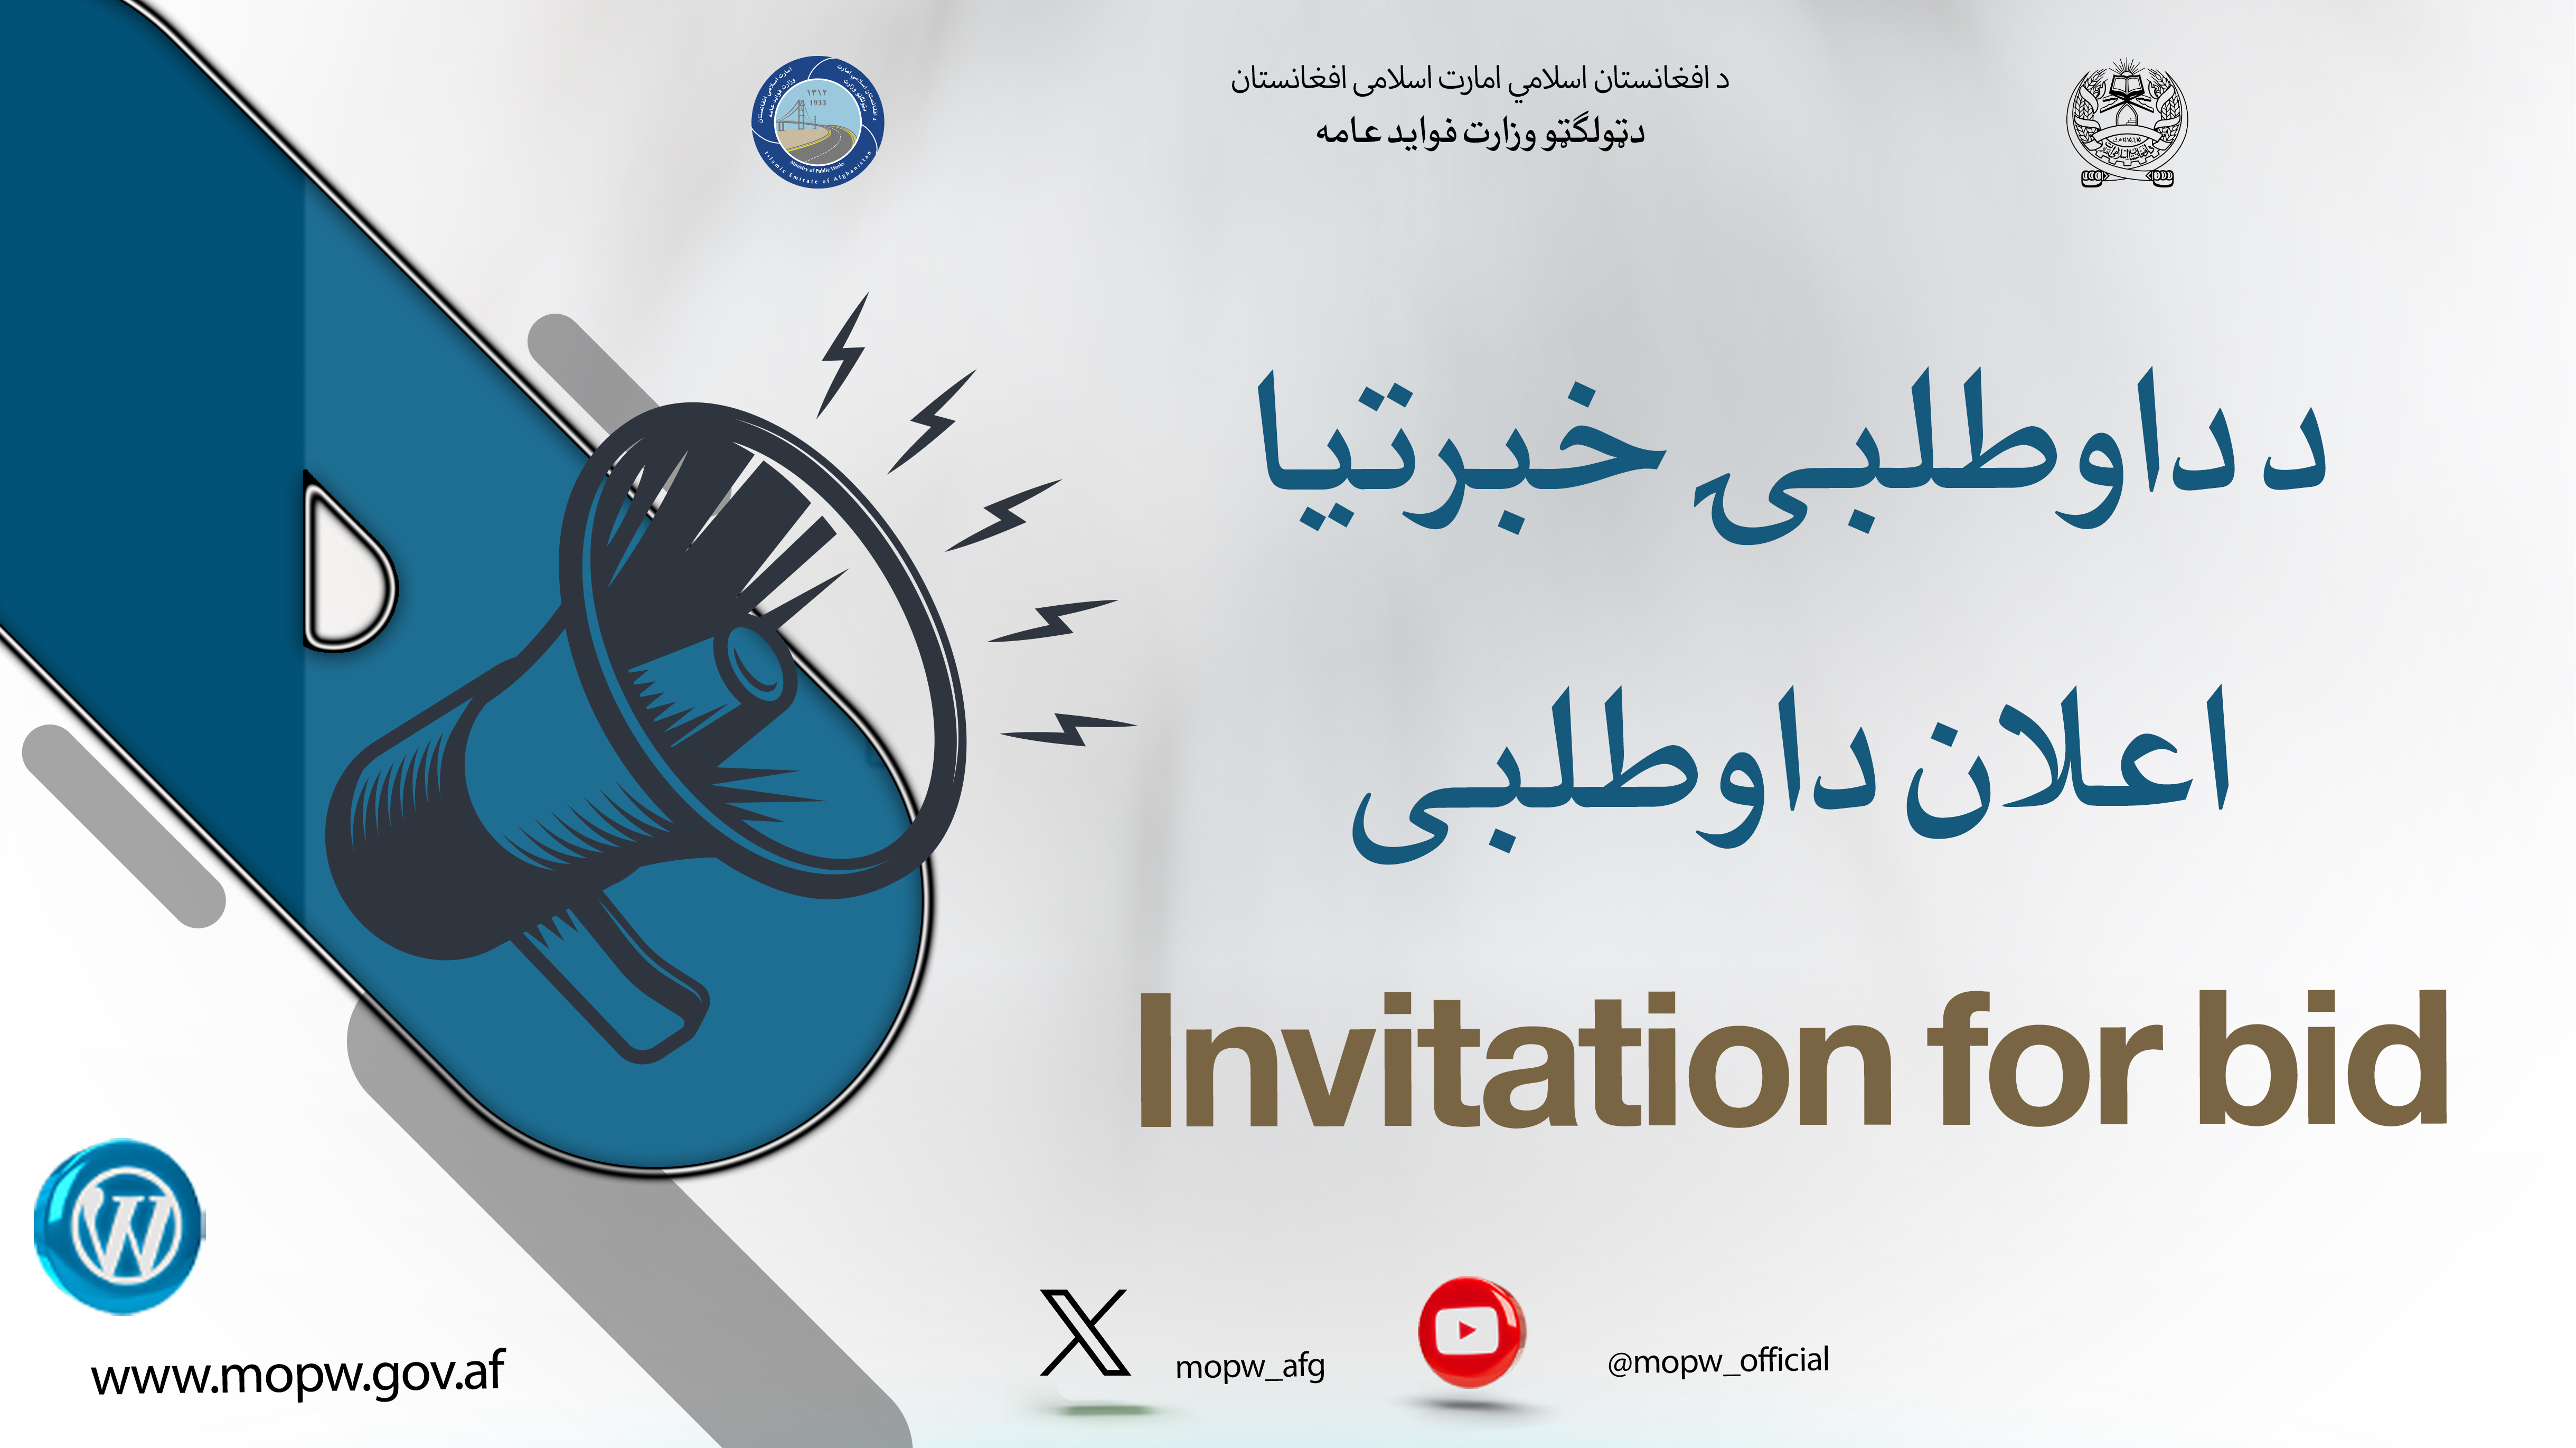 اعلان دعوت به داوطلبی اعمار شش باب تعمیرات مساجد با ملحقات آن در مسیر سرک شاهراه عمومی کابل-کندهار